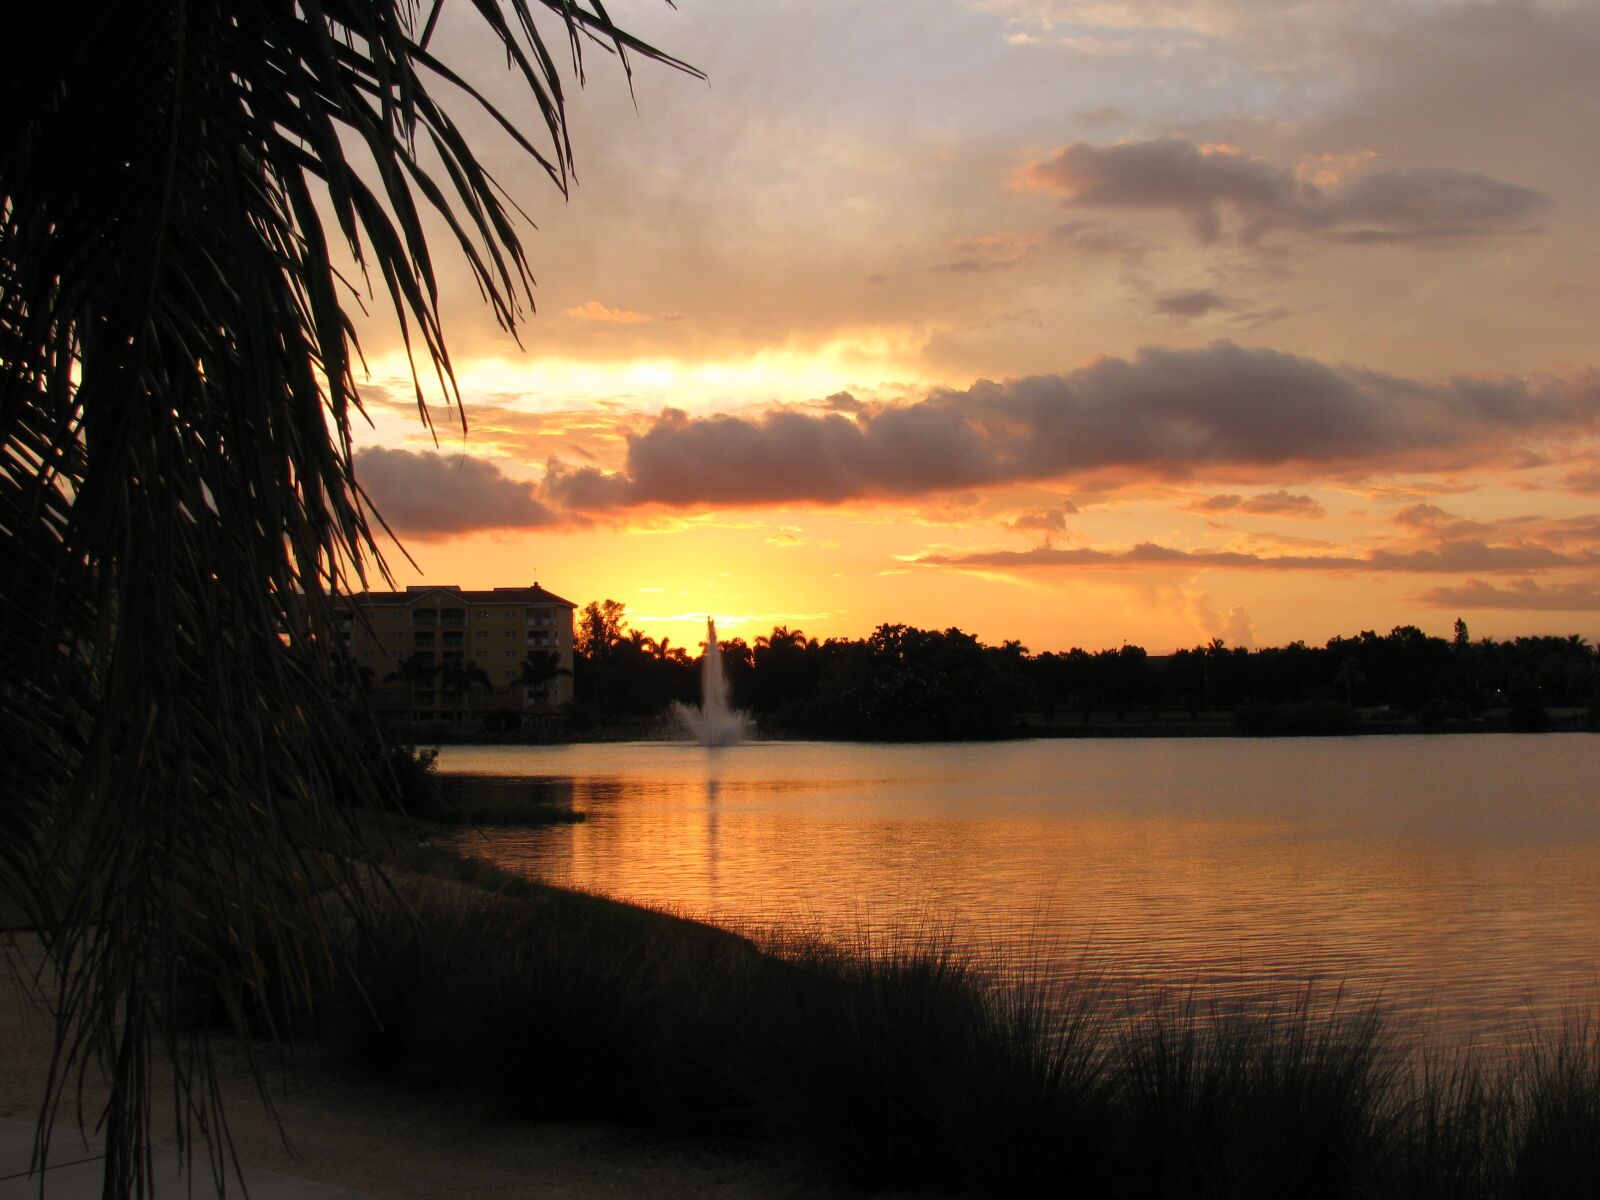 Canon PowerShot SX110 IS sample photo. Sunset, dusk, nature photography